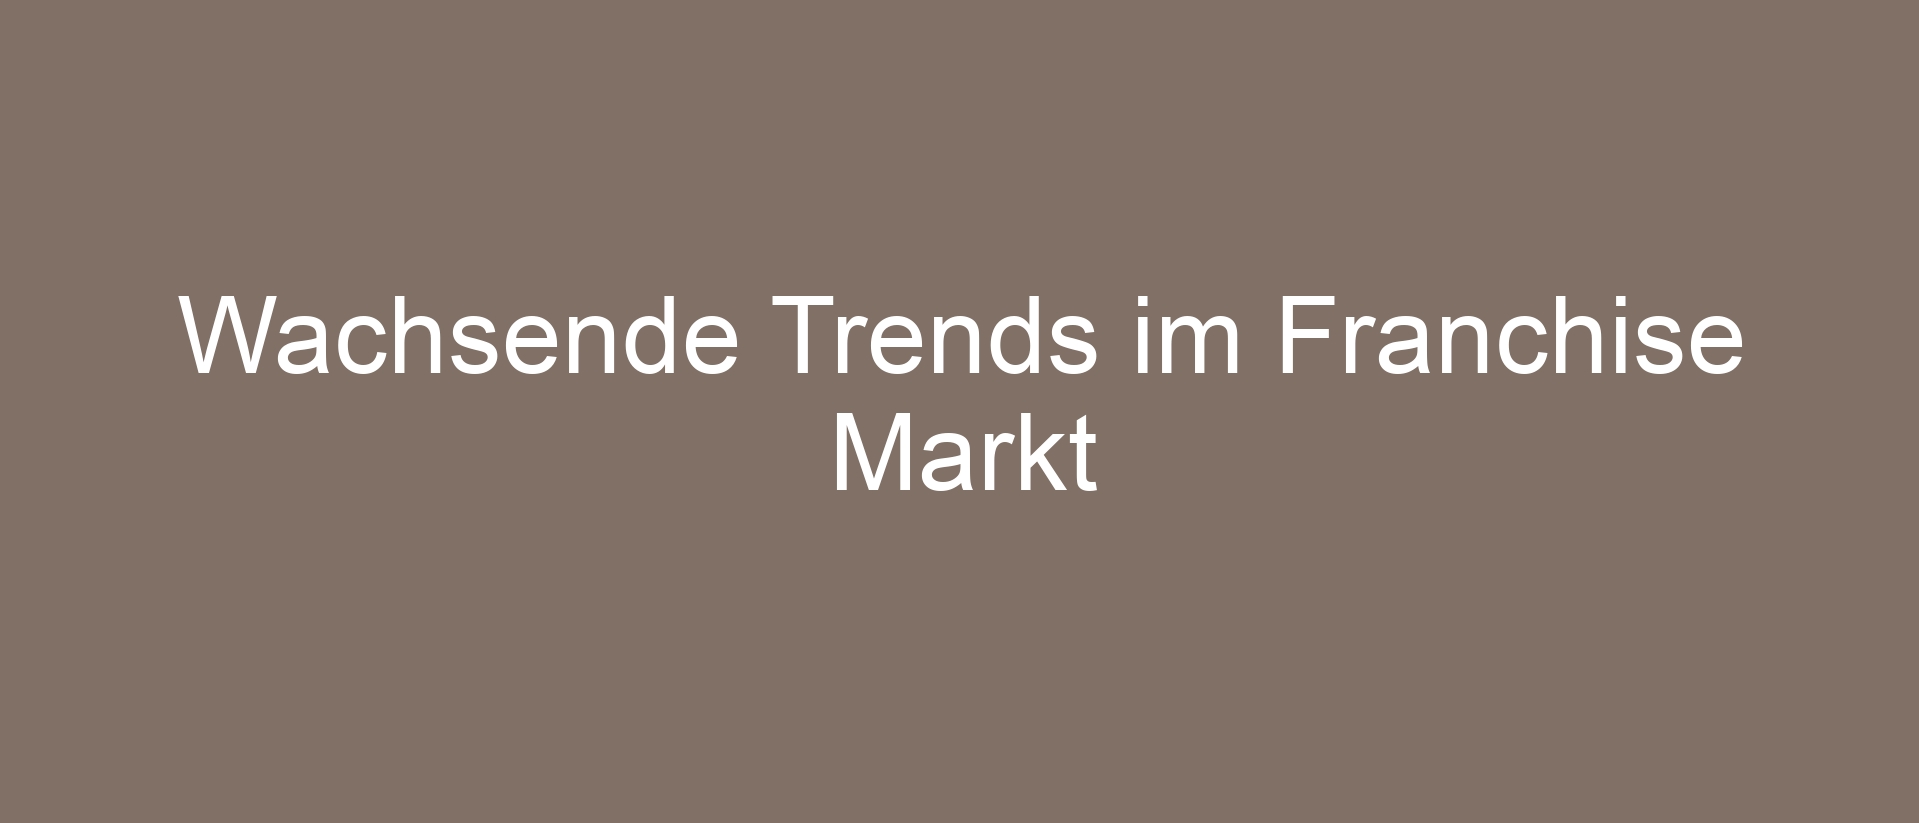 Wachsende Trends im Franchise Markt